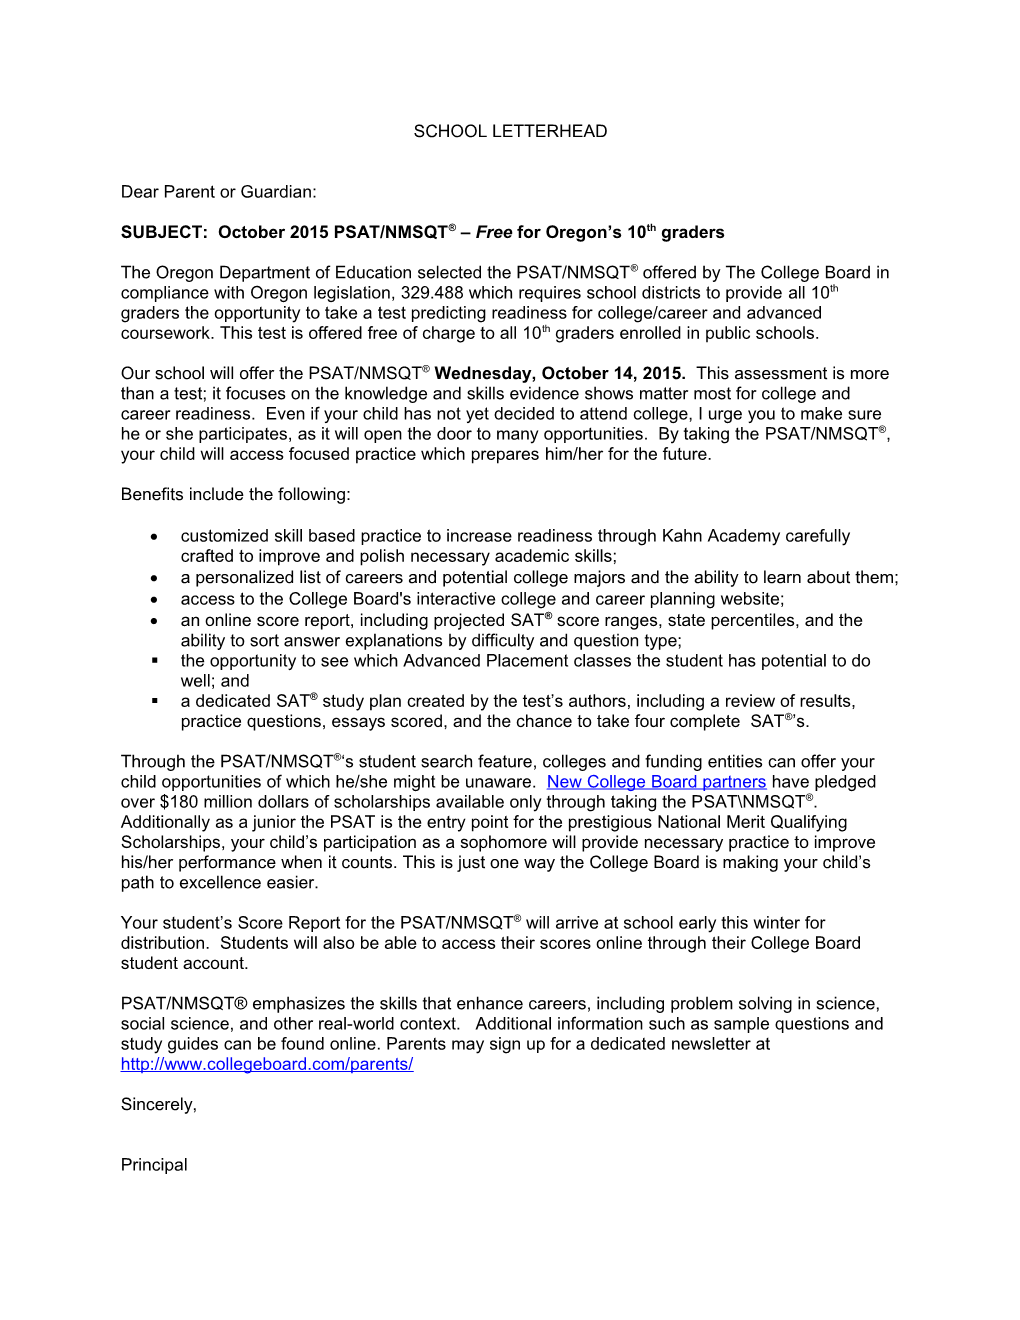 2015 PSAT/NMSQT Sample Parent Letter